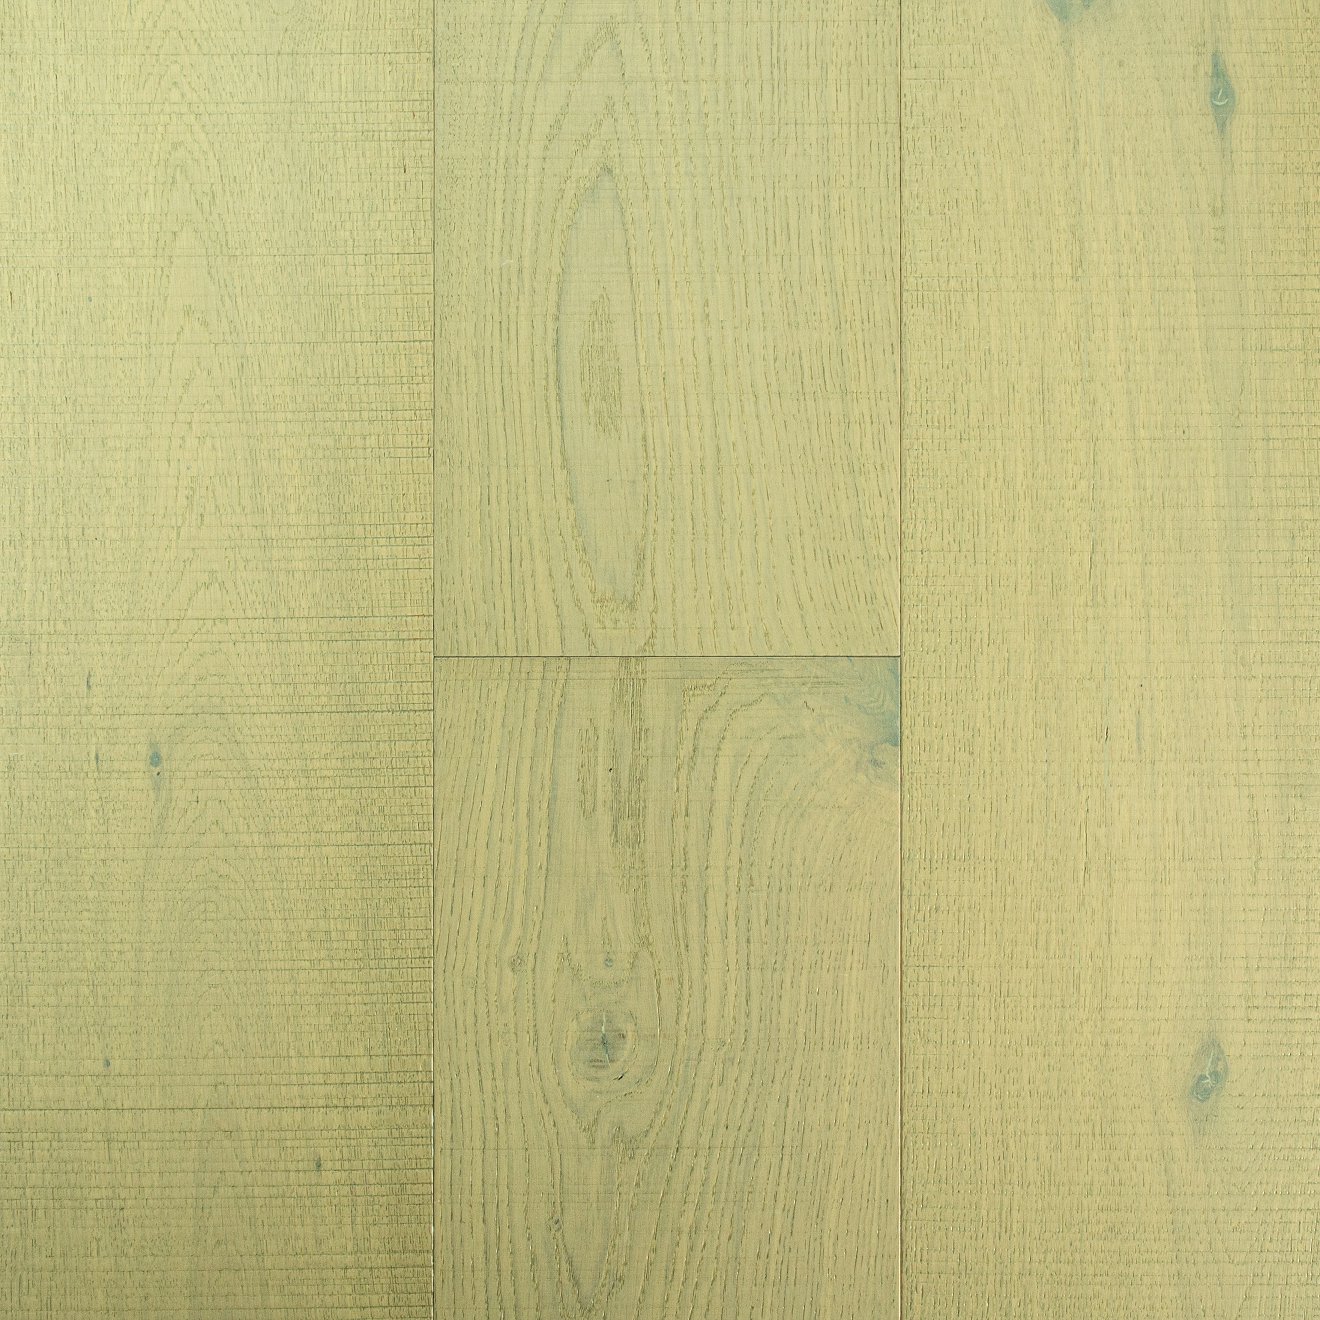 Super Lowest Price Ebony Hardwood Floors -
 Modern style wood veneer SPC core SPC flooring – Kangton